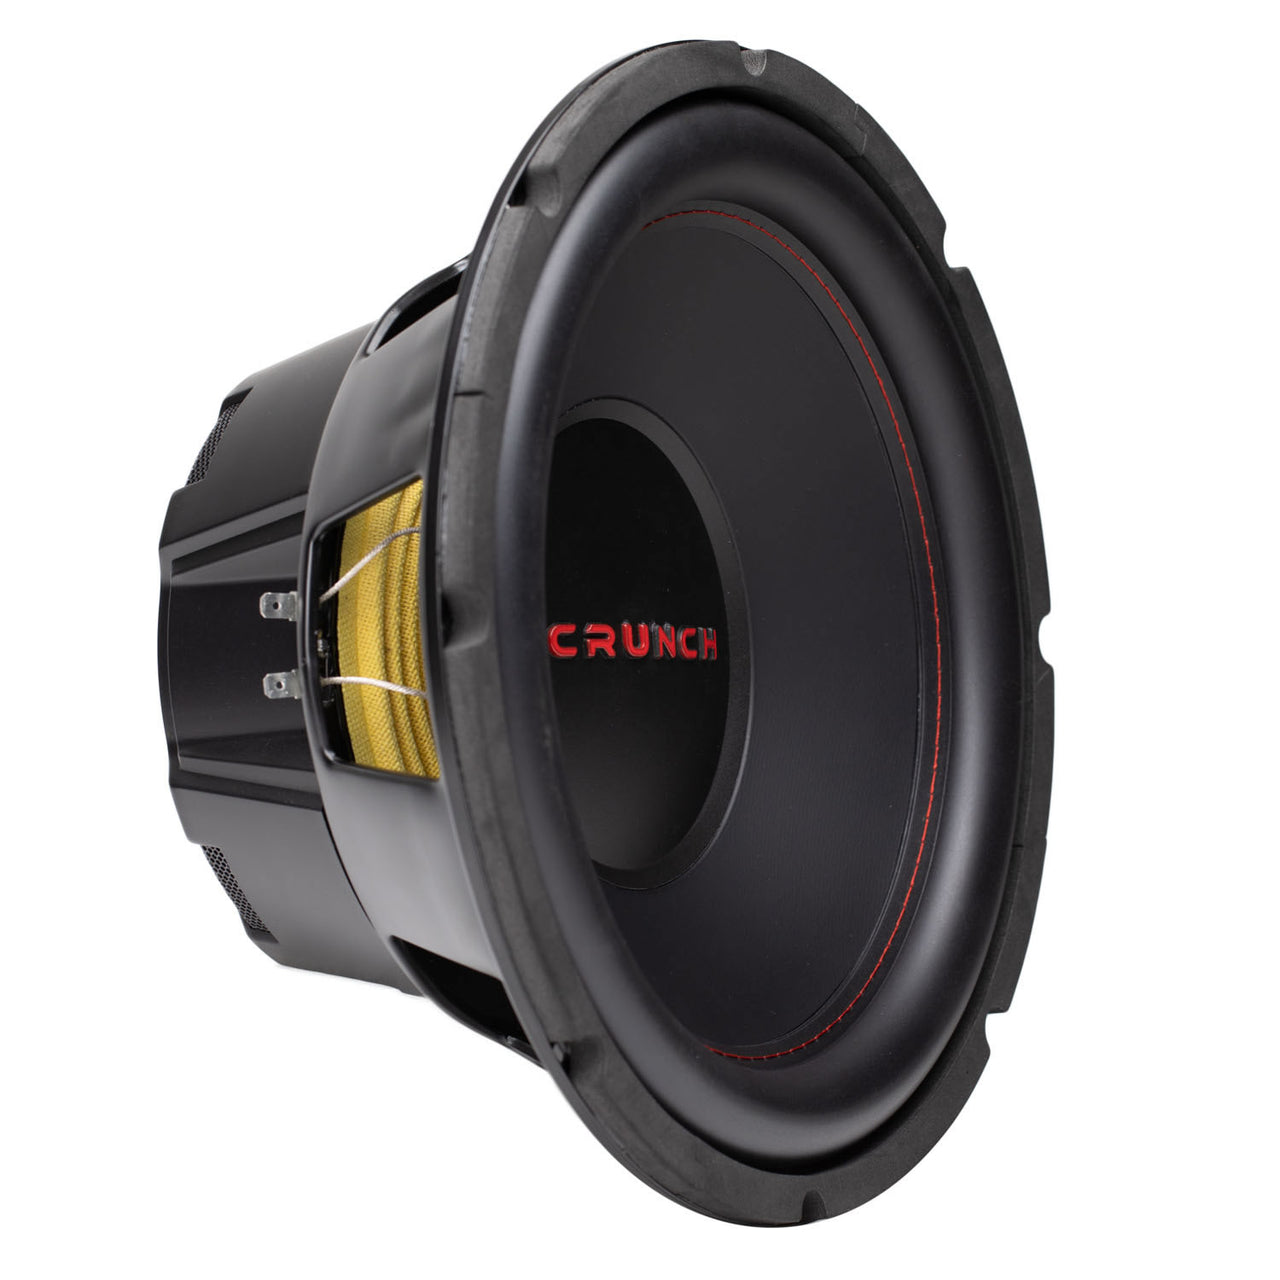 Crunch CRW12D4 12" 4 Ohm DVC 800 watt subwoofer